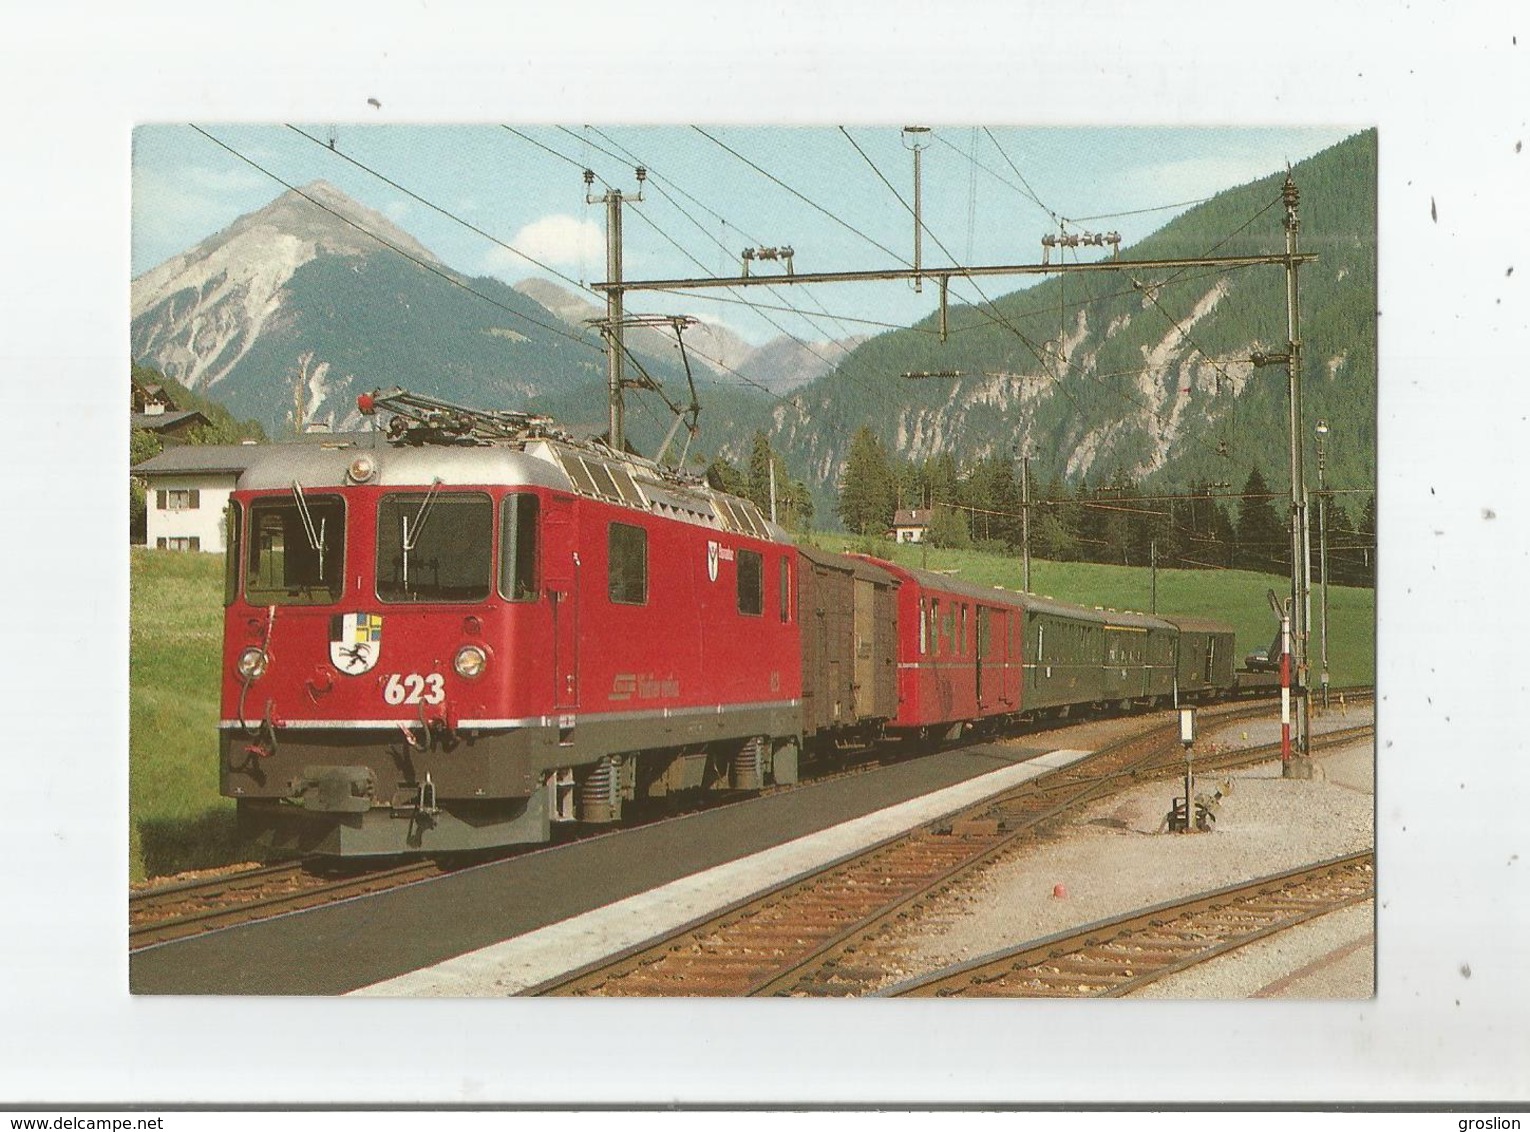 EN GARE DE SURAVA (124) CH DE FER RETHIQUES LE TRAIN 562 ST MORITZ- COIRE ARRIVE SUR LA LIGNE DE L'ALBULA AOUT 1985 - Chur